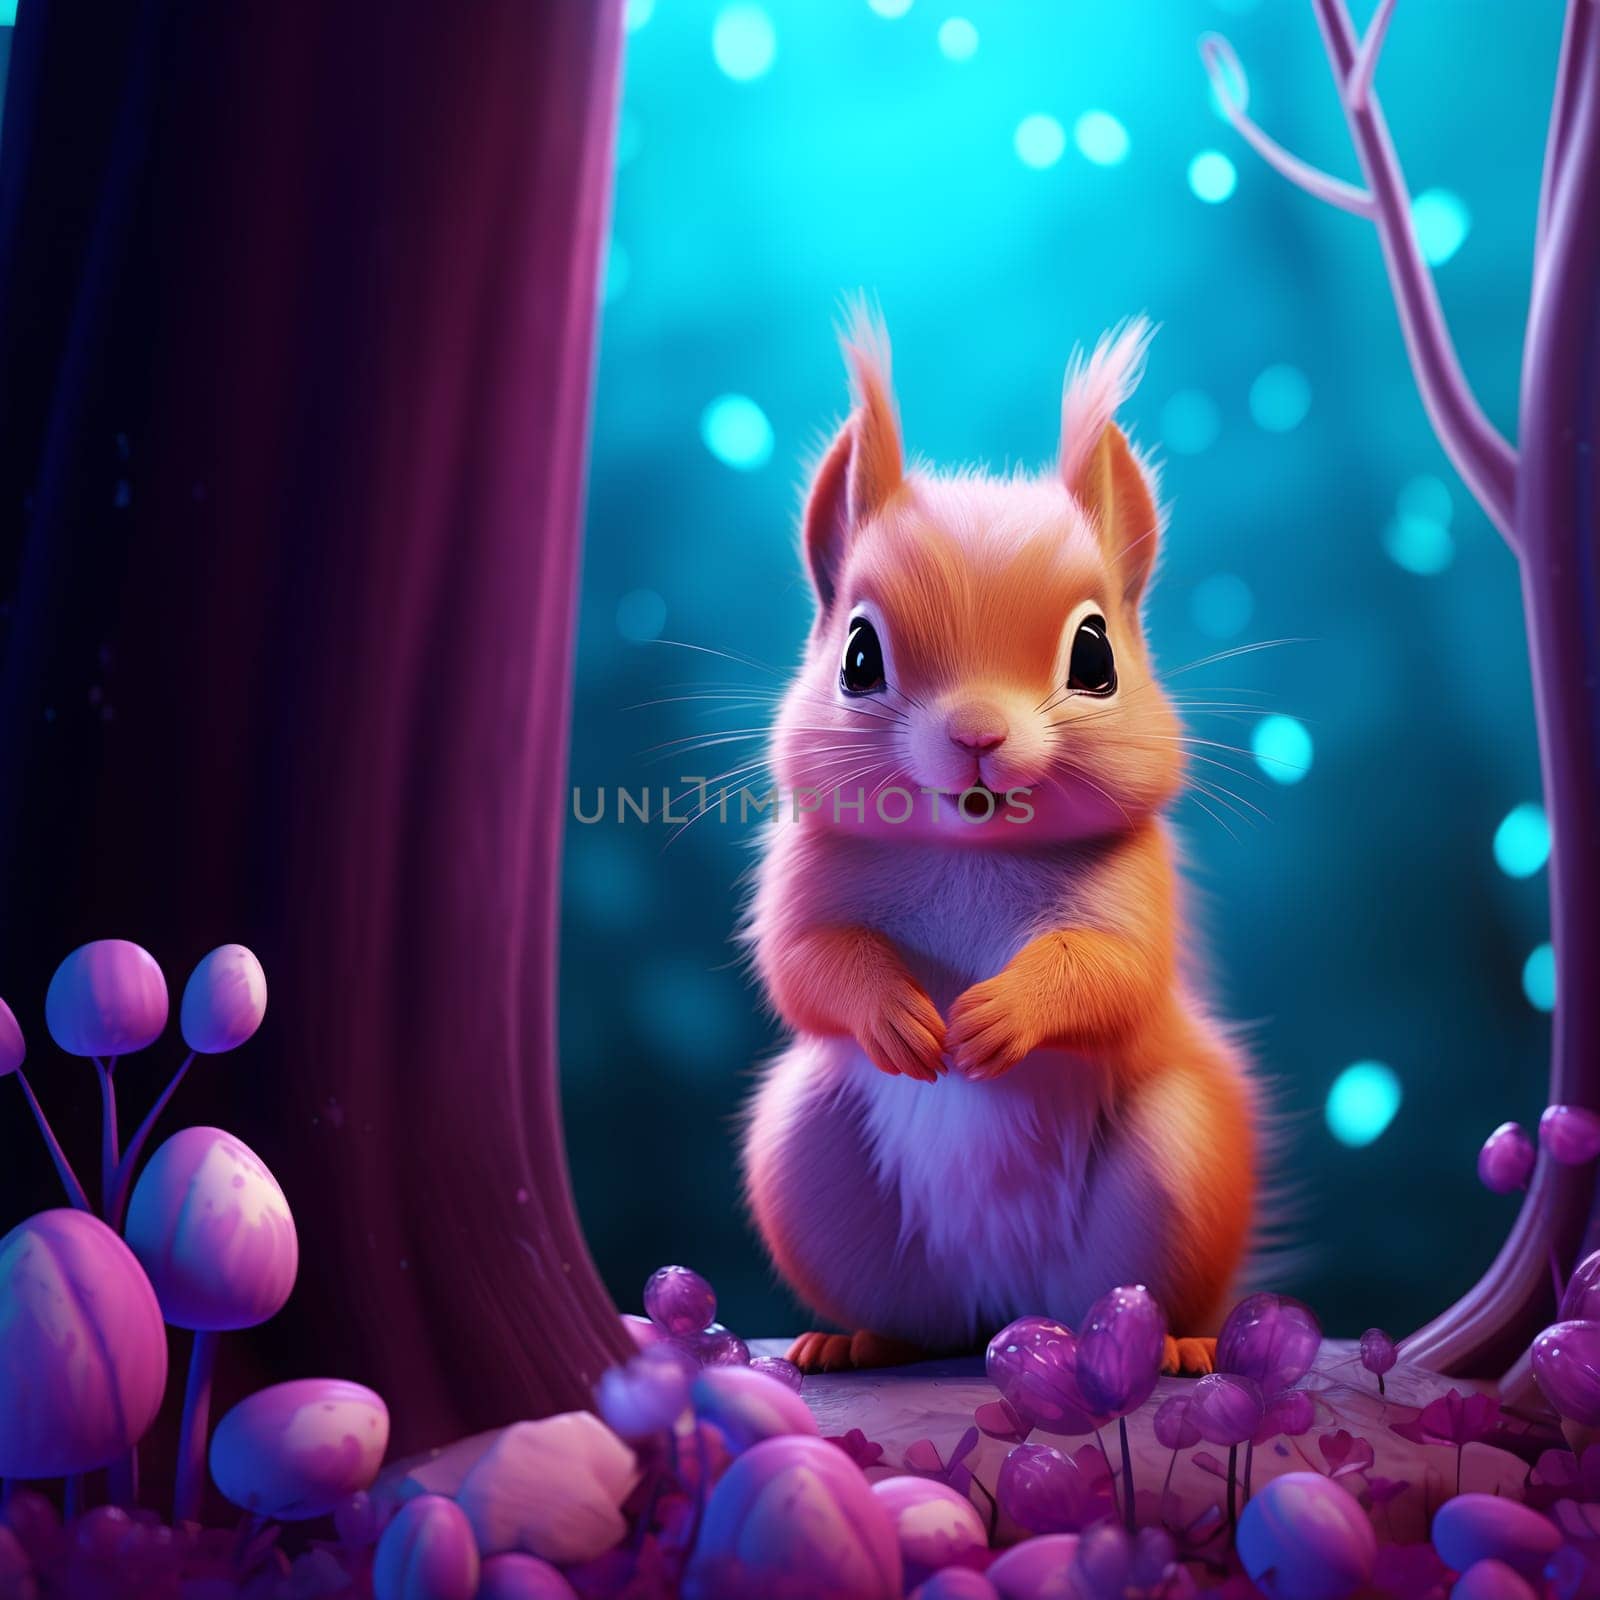 A close up of a cute cartoon squirrel in a magical forest - Generative AI